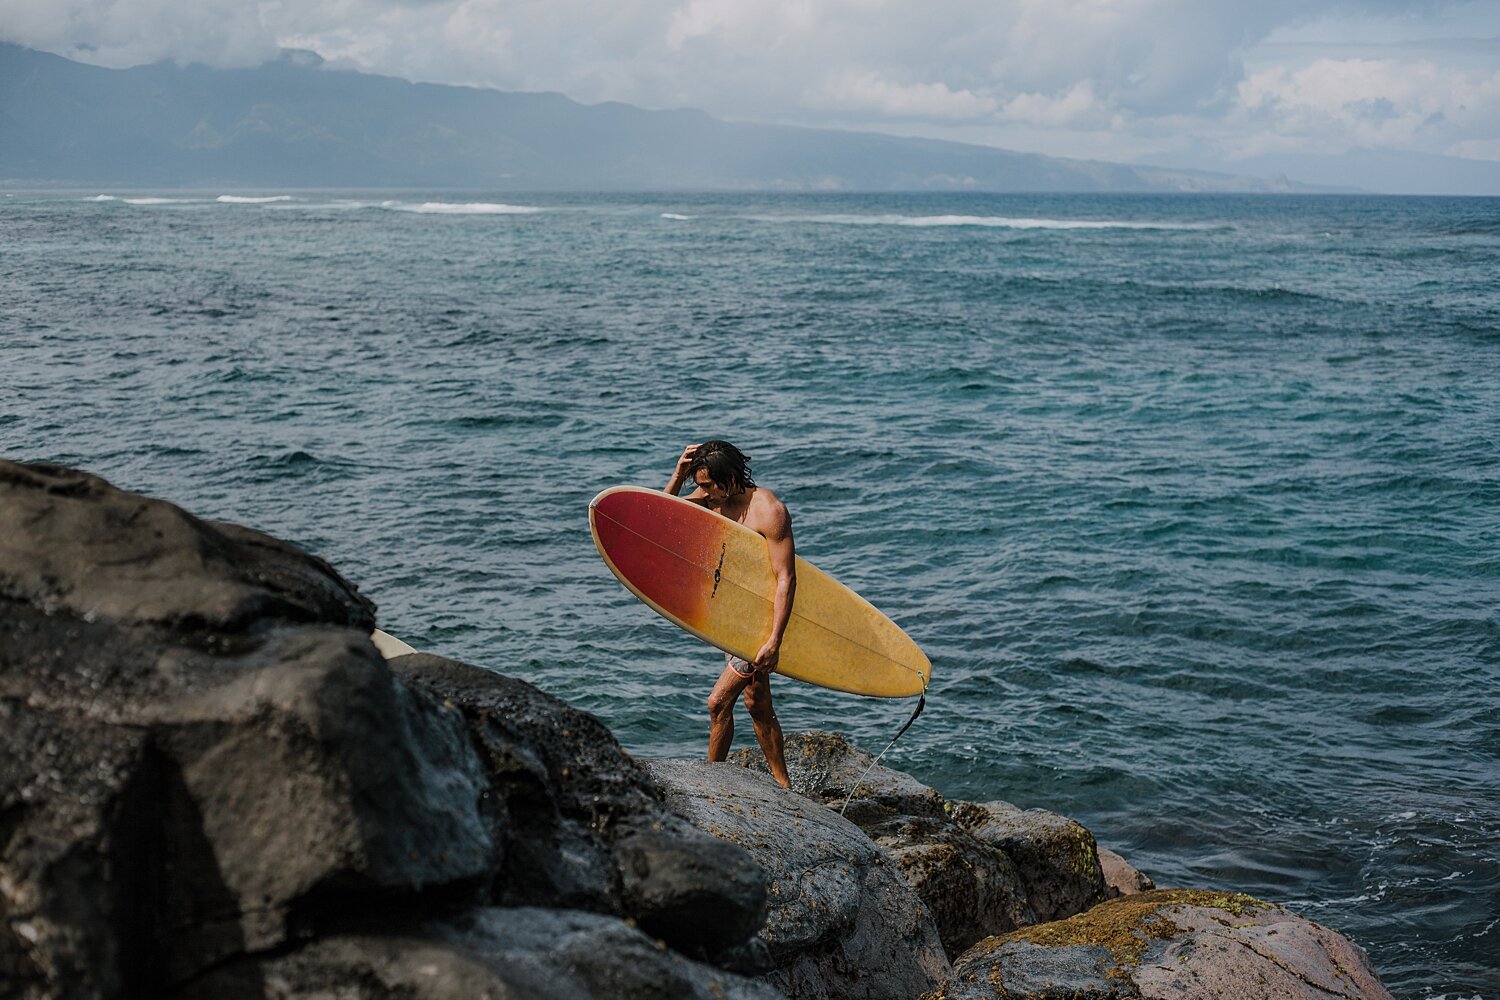 surfers at ho'okipa beach, surfing ho'okipa beach, ho'okipa beach near paia, maui hawaii photographer, maui hawaii surfing, maui hawaii engagements